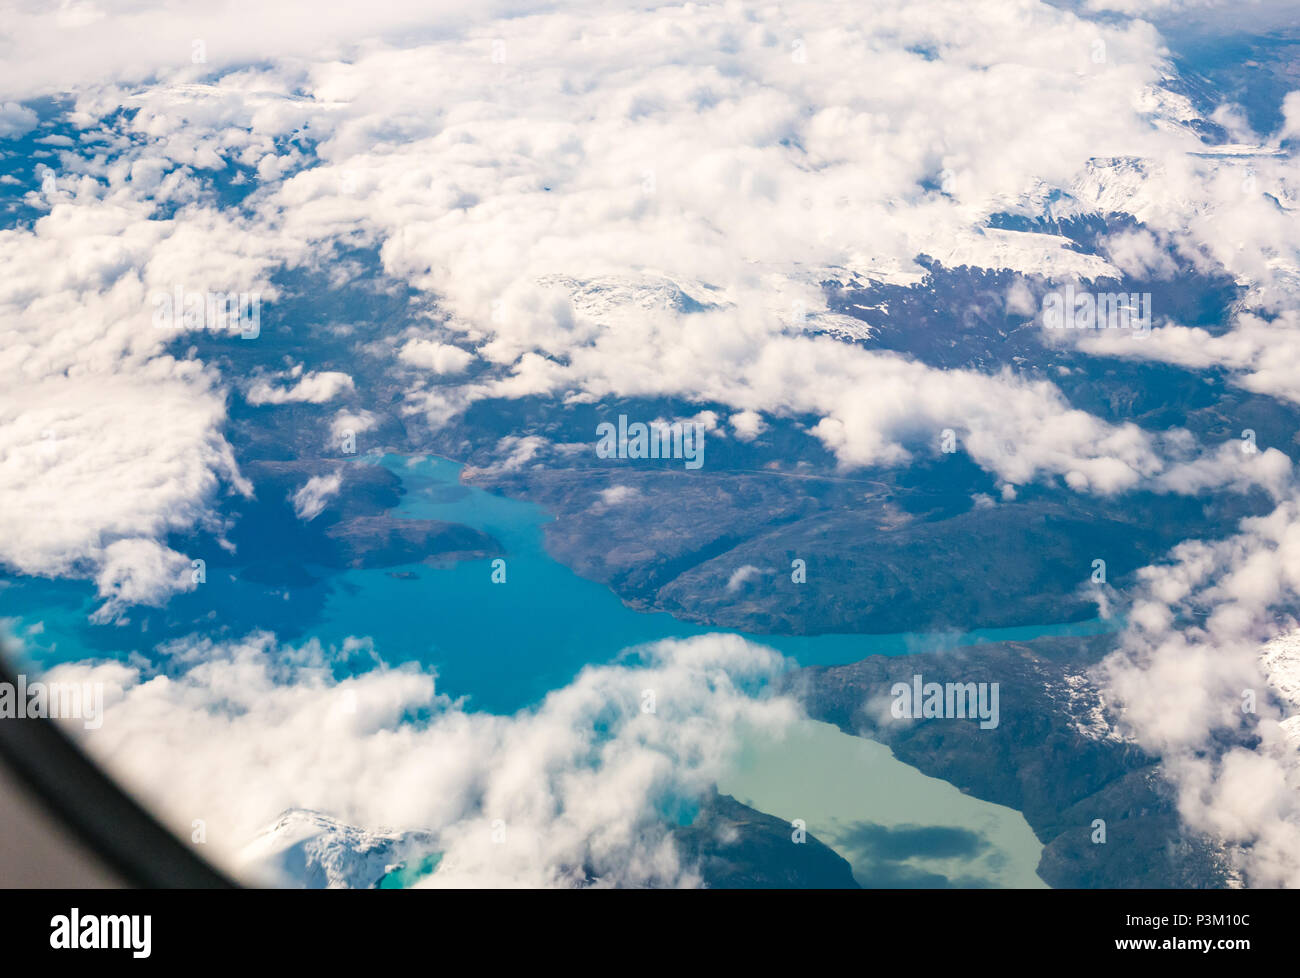 Vue depuis la fenêtre de l'avion de la neige a couvert des Andes avec des lacs de couleurs différentes, le sud du champ de glace de Patagonie Patagonie, au Chili Banque D'Images